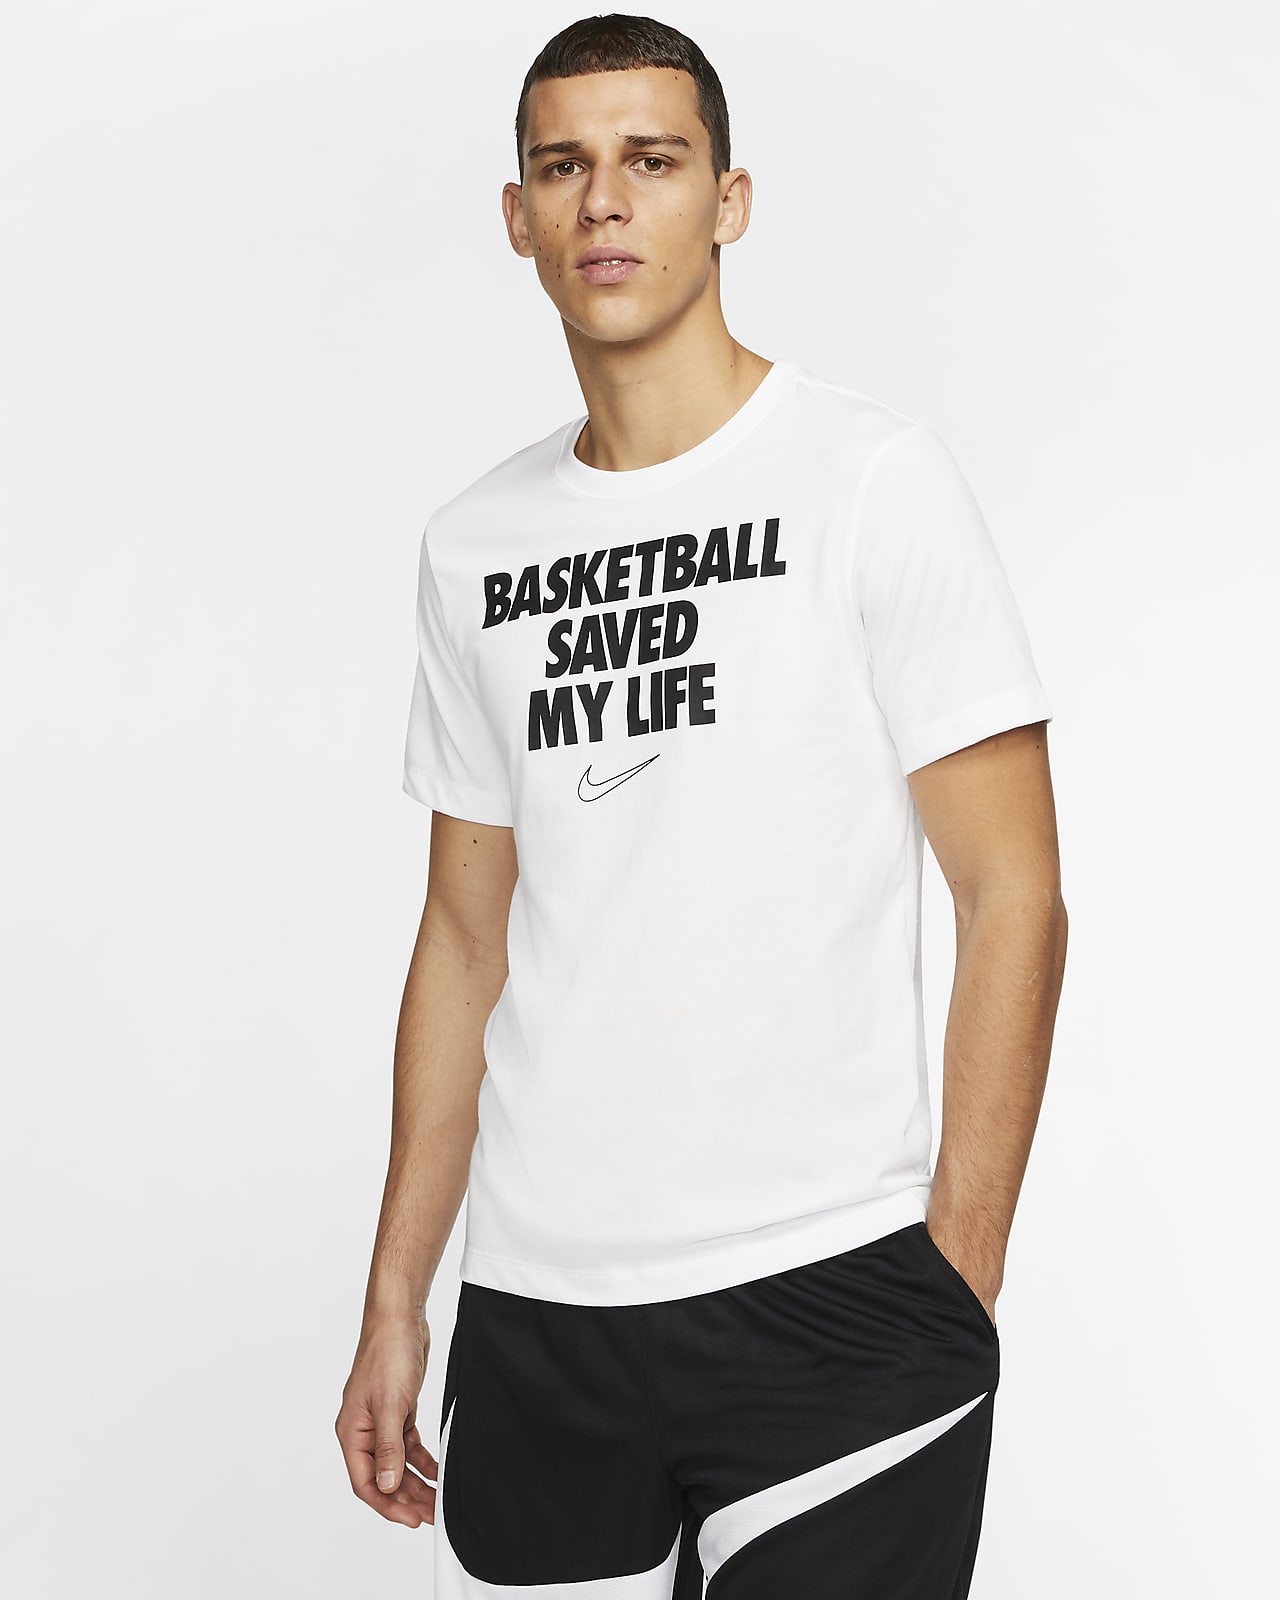 nike dri fit shirts basketball